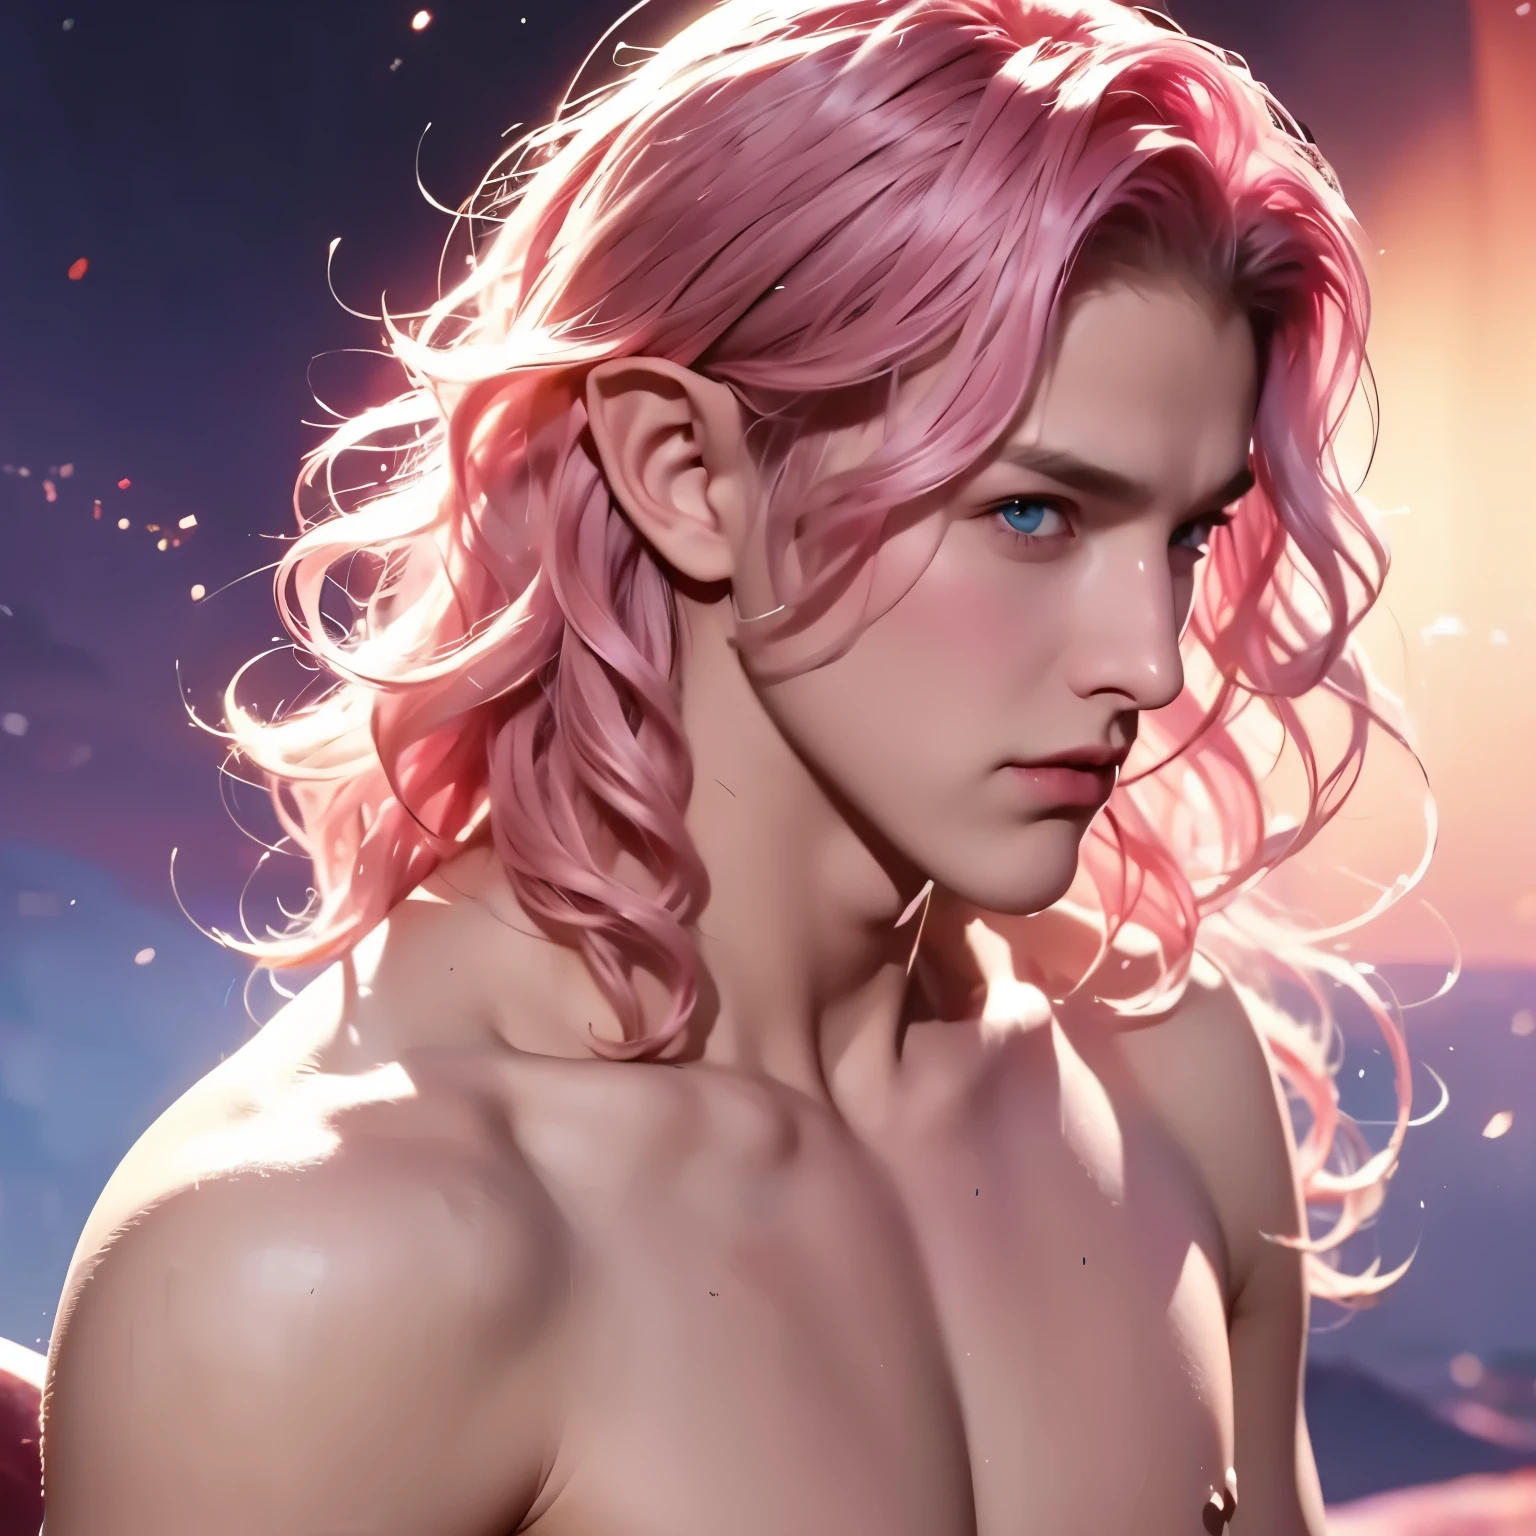 Mann, jung, Junge, kurzes welliges Haar, pinkes Haar, blaue Augen, elf, mit nacktem Oberkörper, Mittelalterlicher Hintergrund